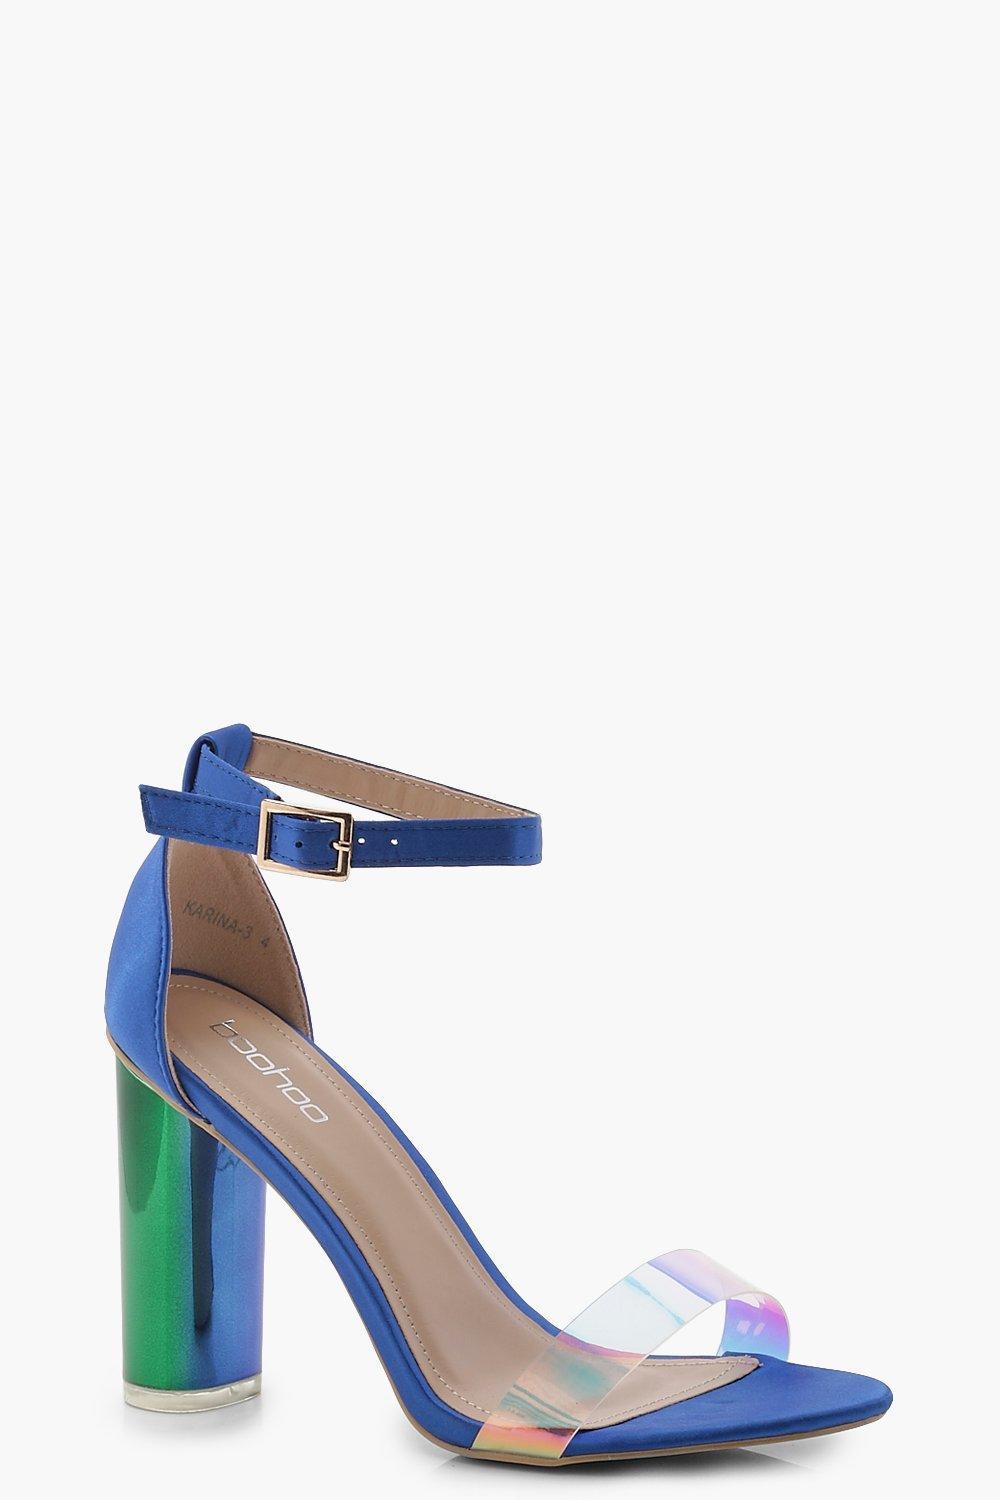 cobalt heels